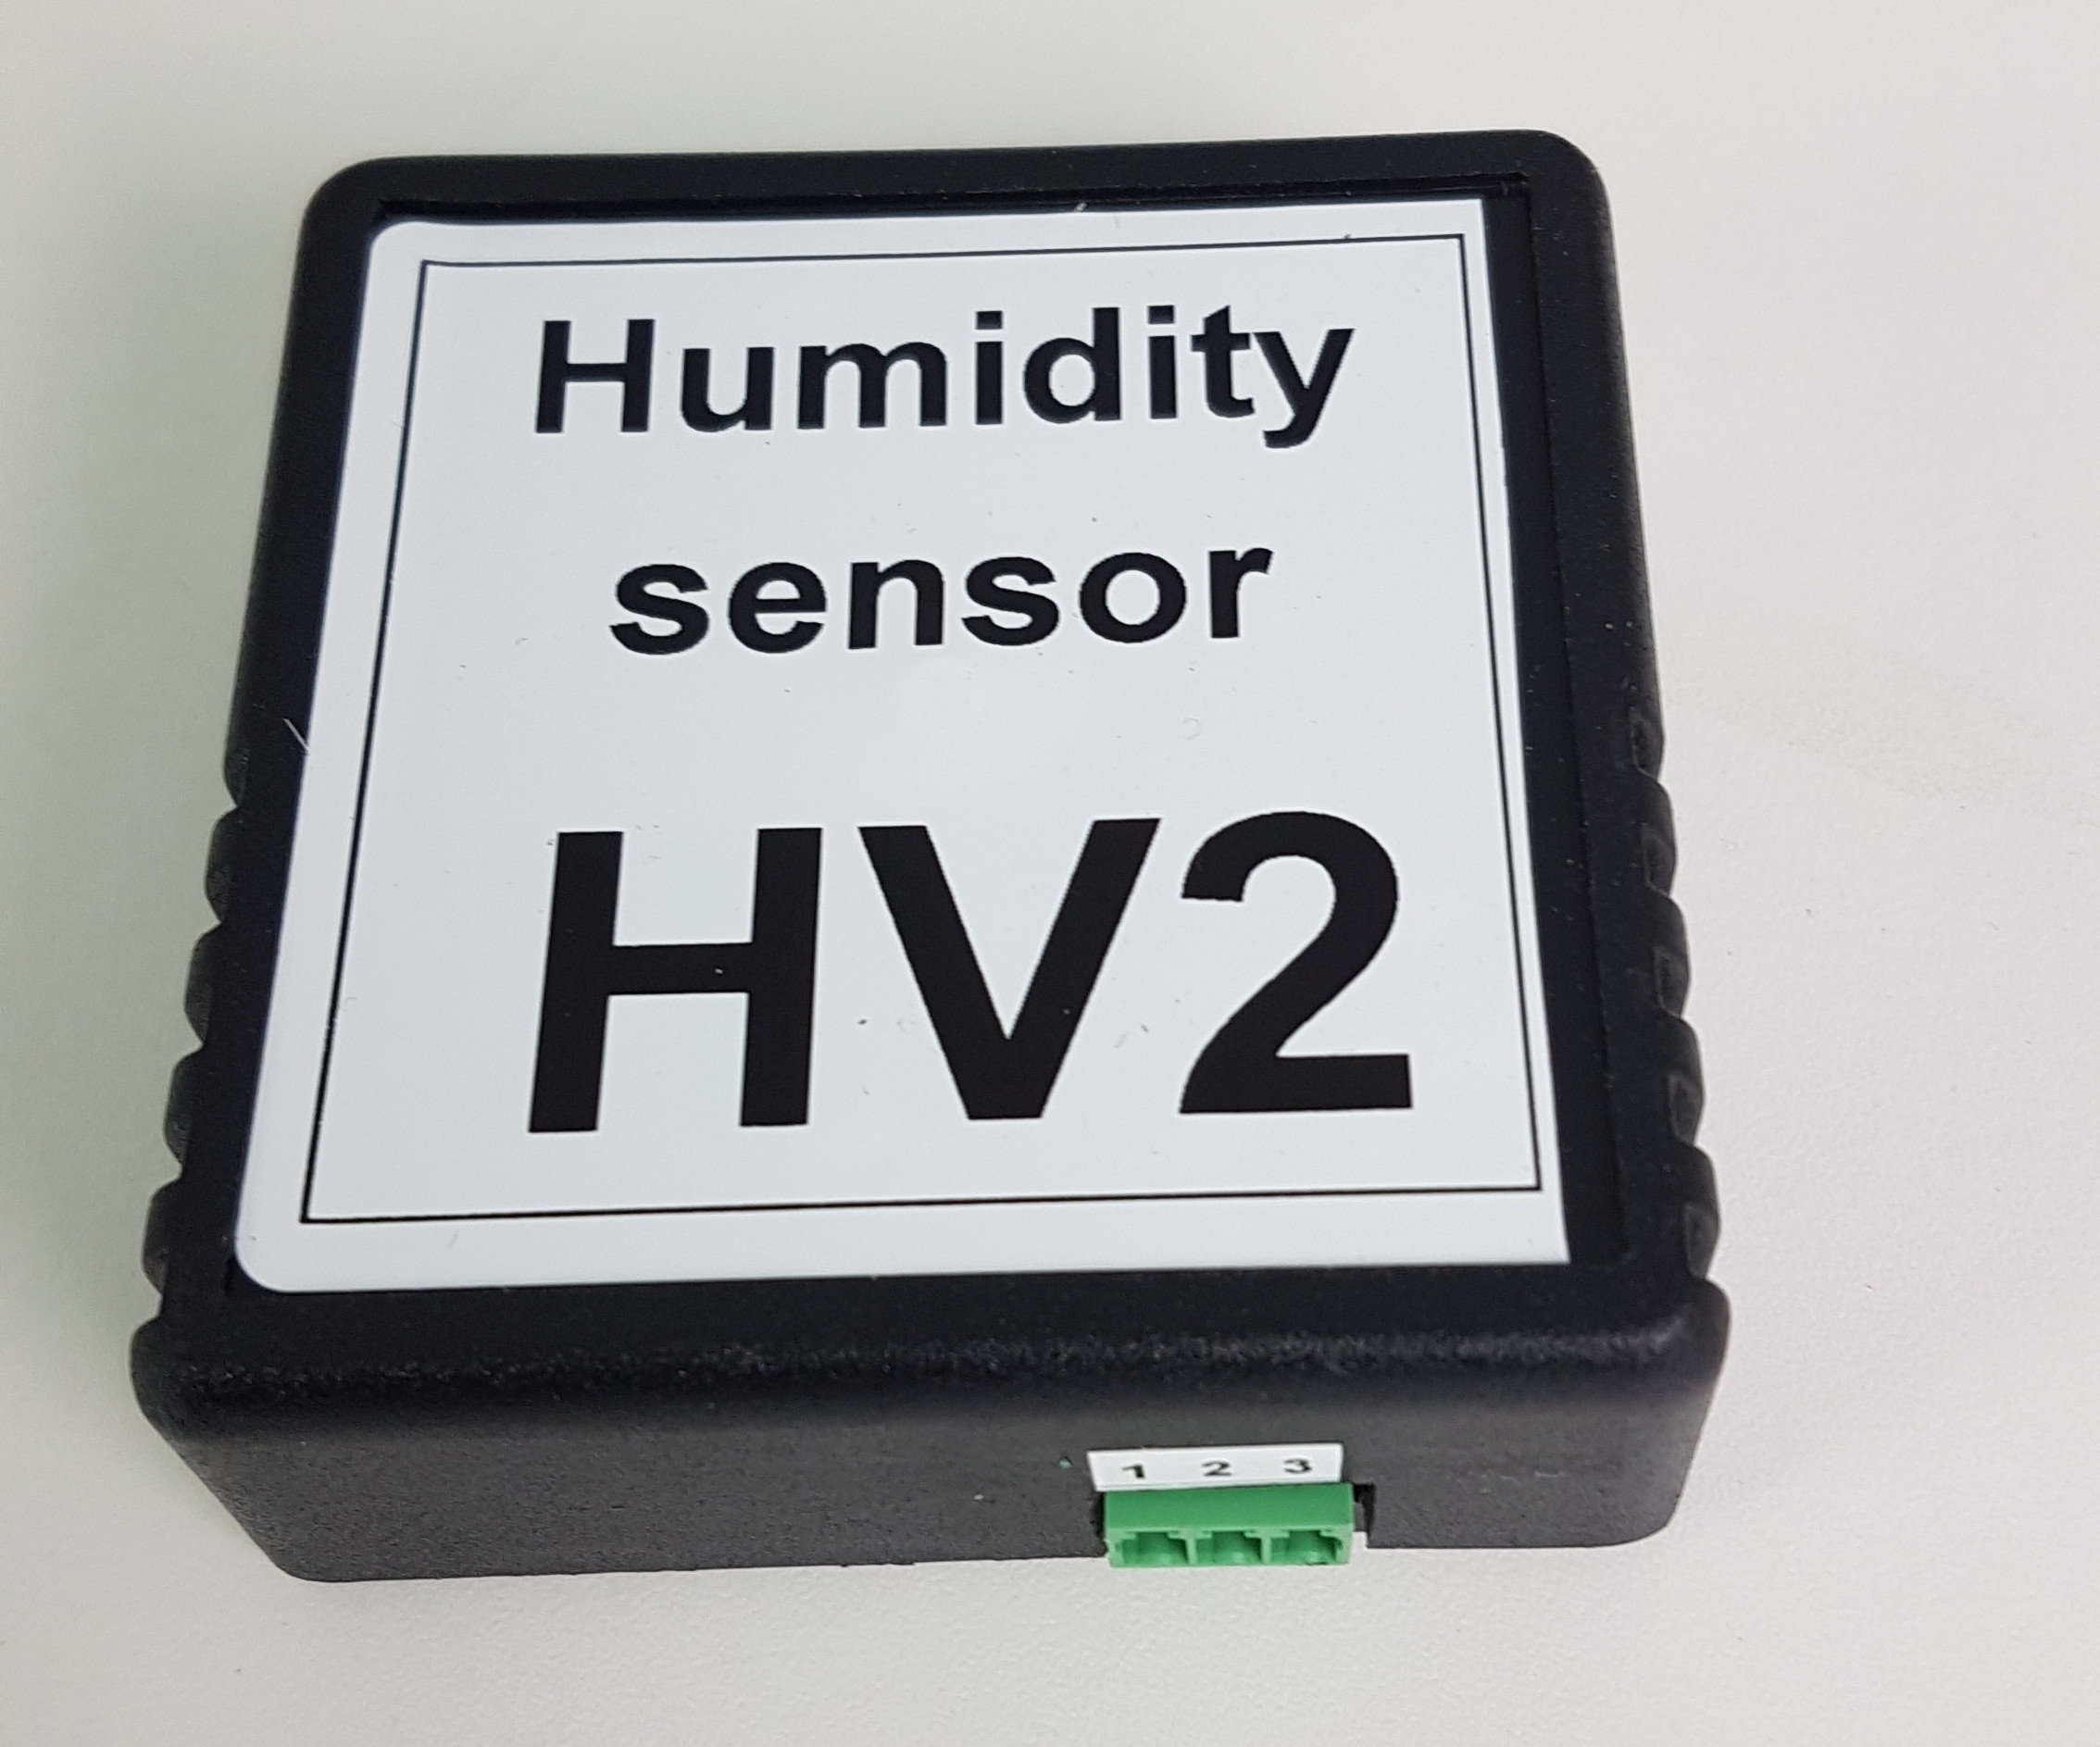 Feuchte Sensor HV2 für Vents VUE Geräte mit A12, A14 A21, A22 Regelung, von Vents oder Blauberg